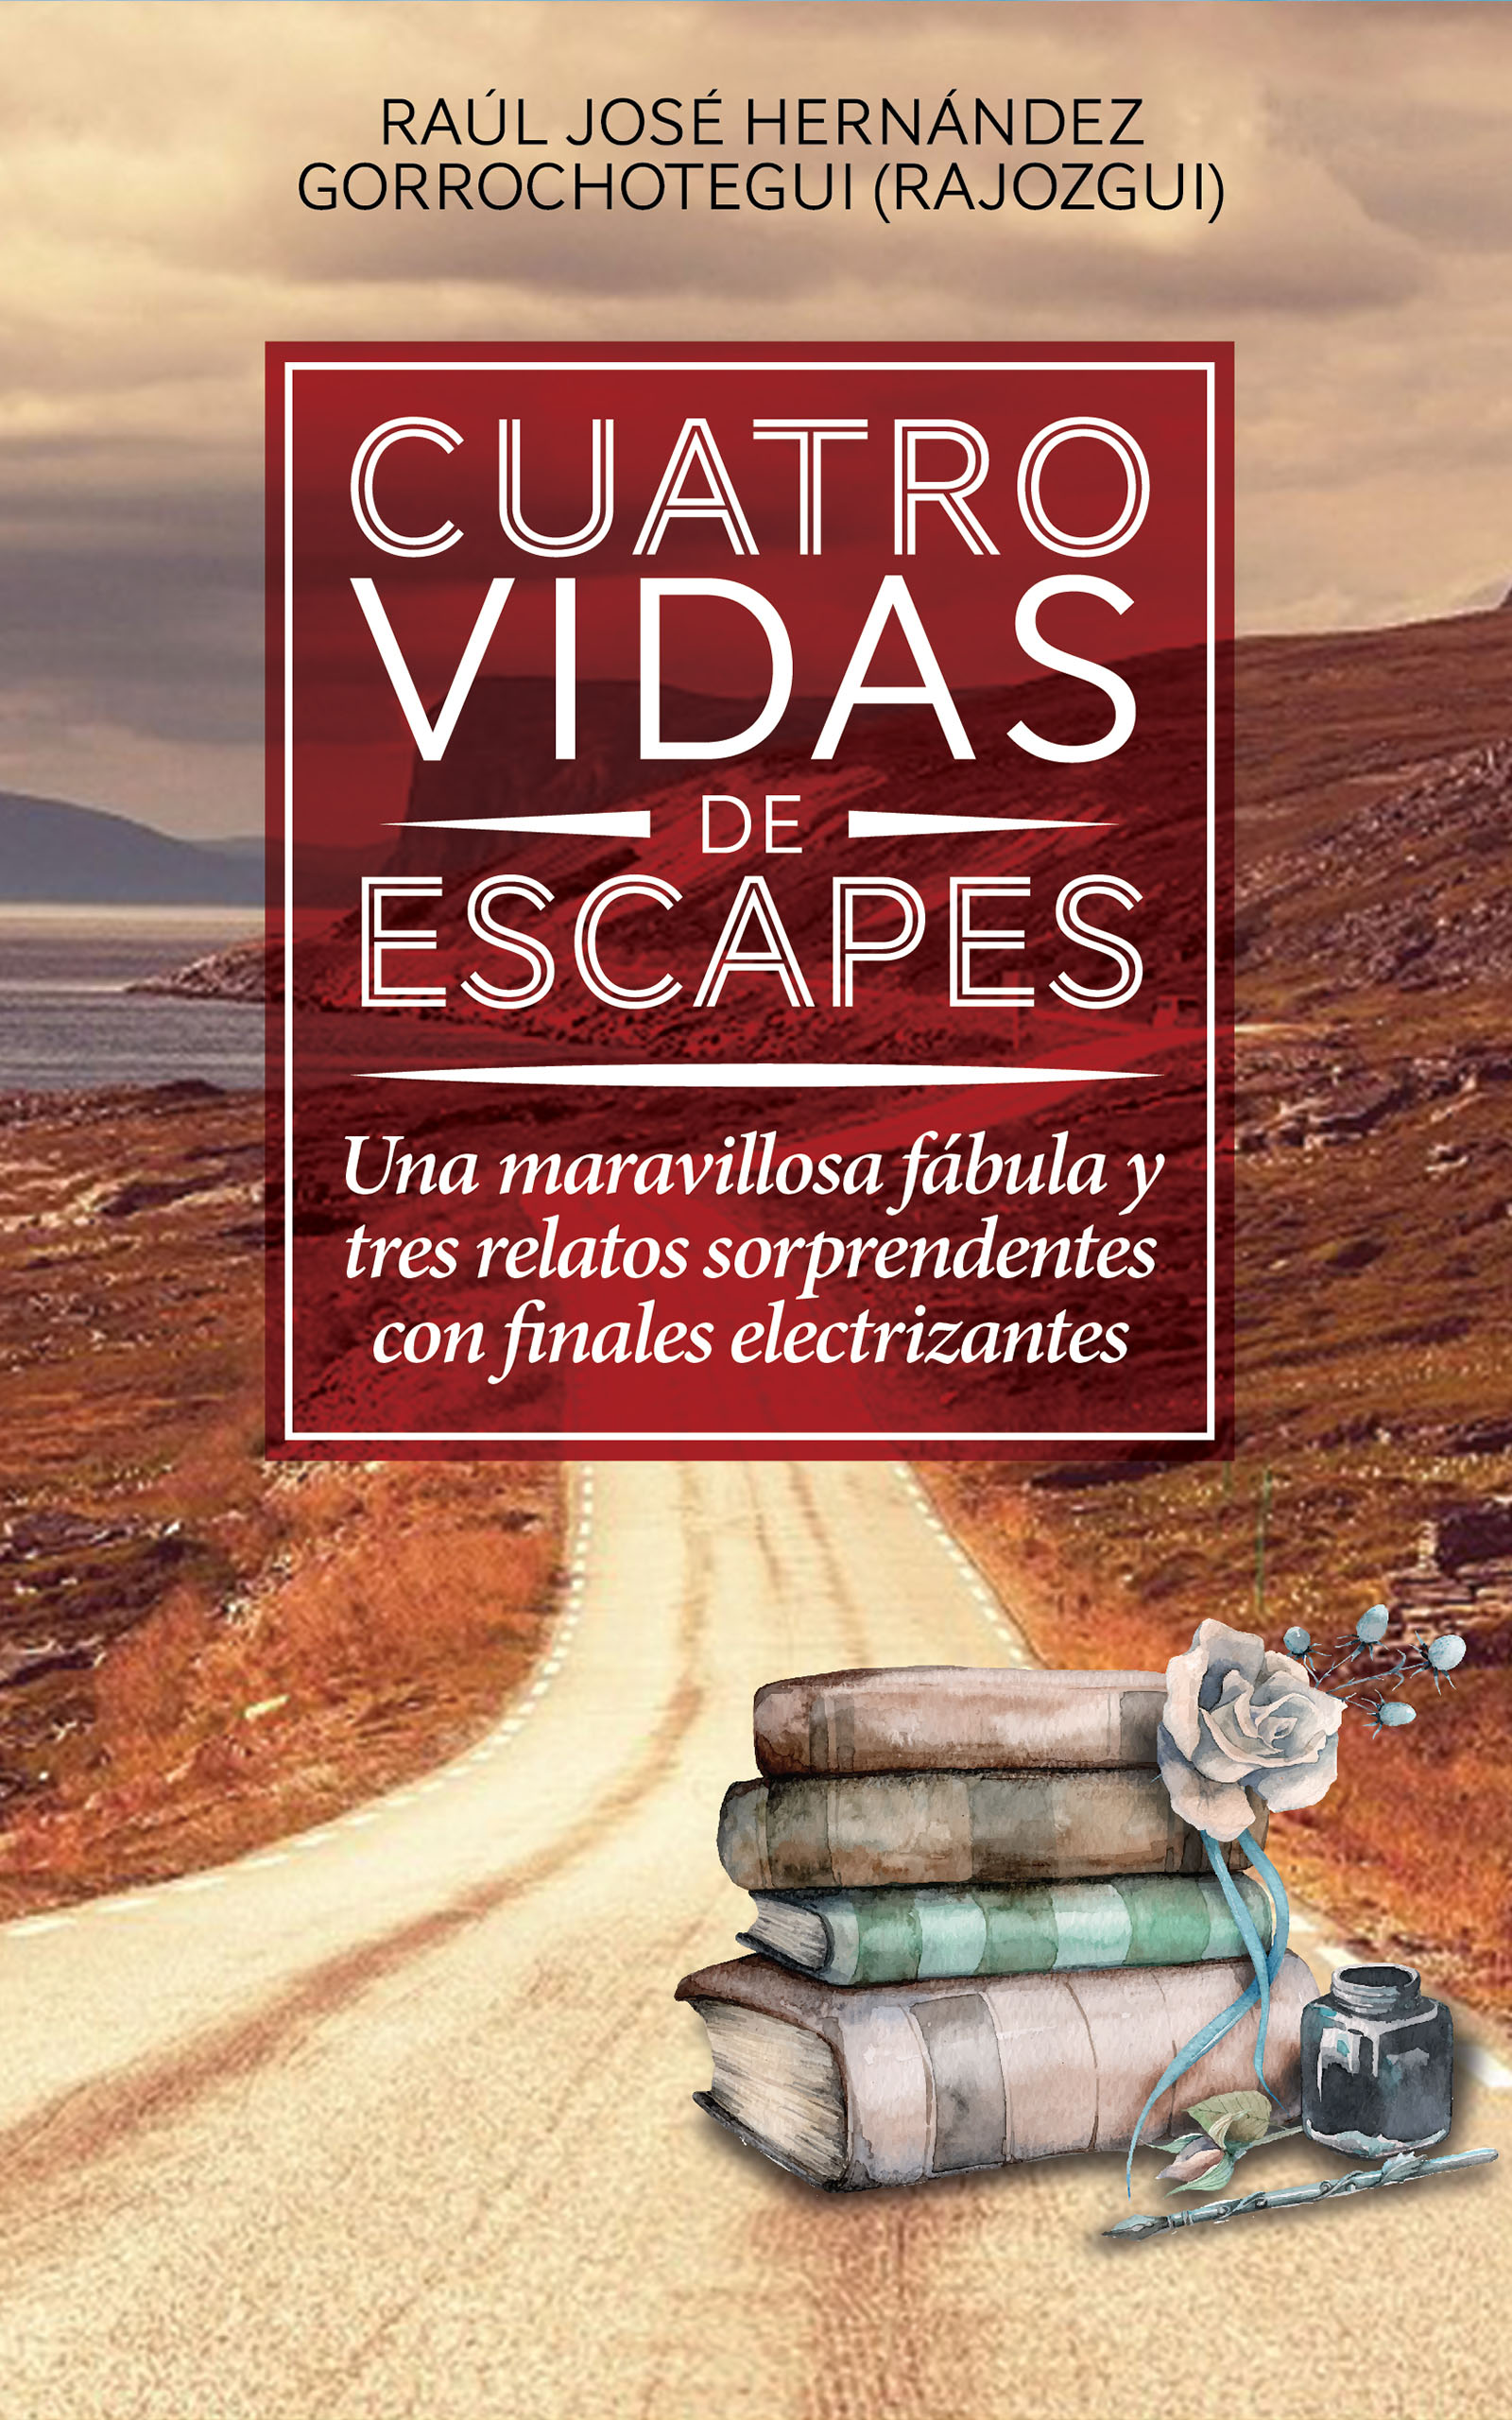 Cuatro vidas de escapes, de Raúl José Hernández Gorrochotegui (Rajozgui)